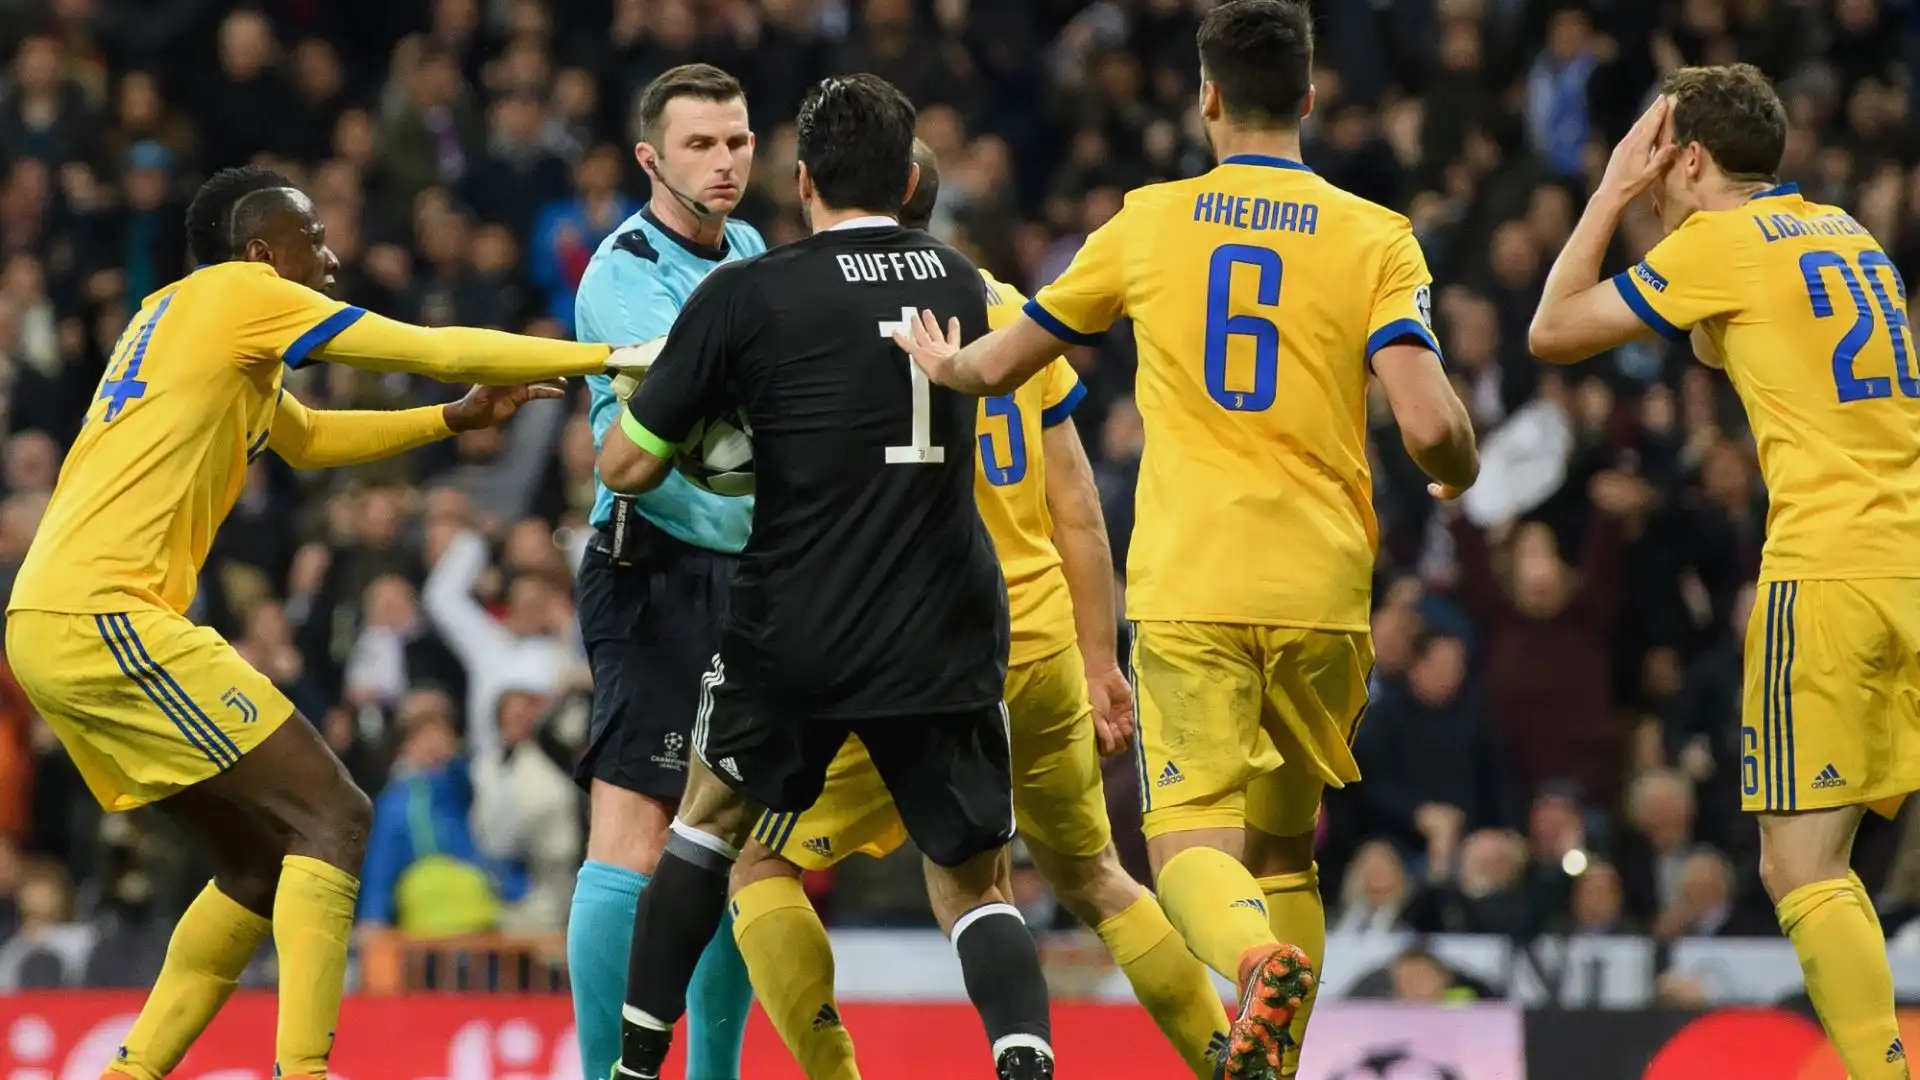 L'arbitro britannico 5 anni fa espulse Buffon in una sfida contro il Real Madrid